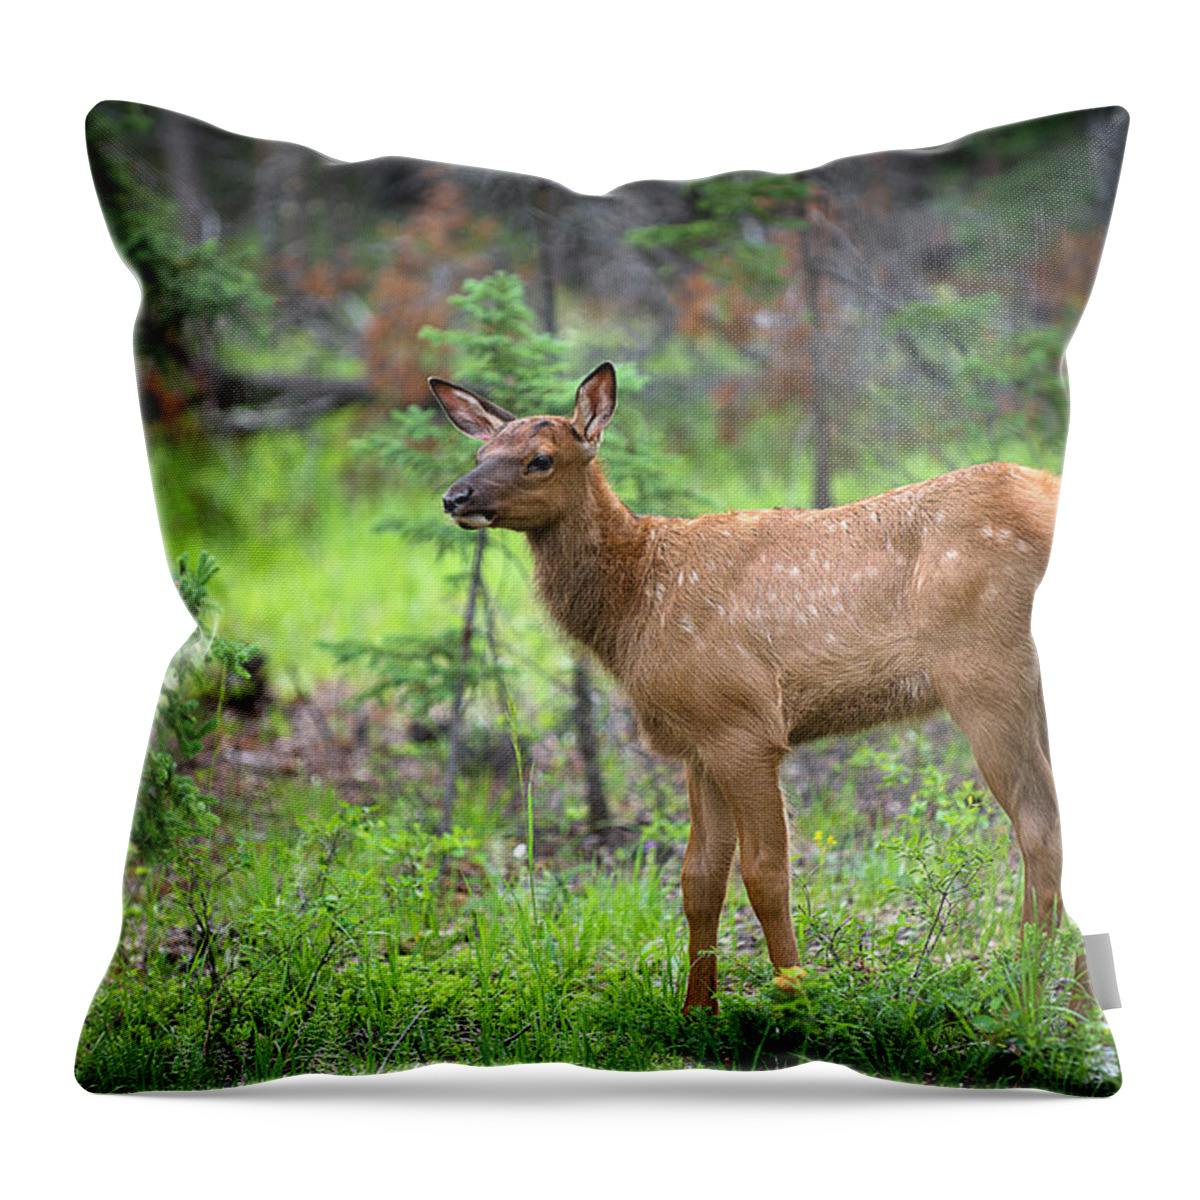 Elk Throw Pillow featuring the photograph A Newborn Elk by Bill Cubitt